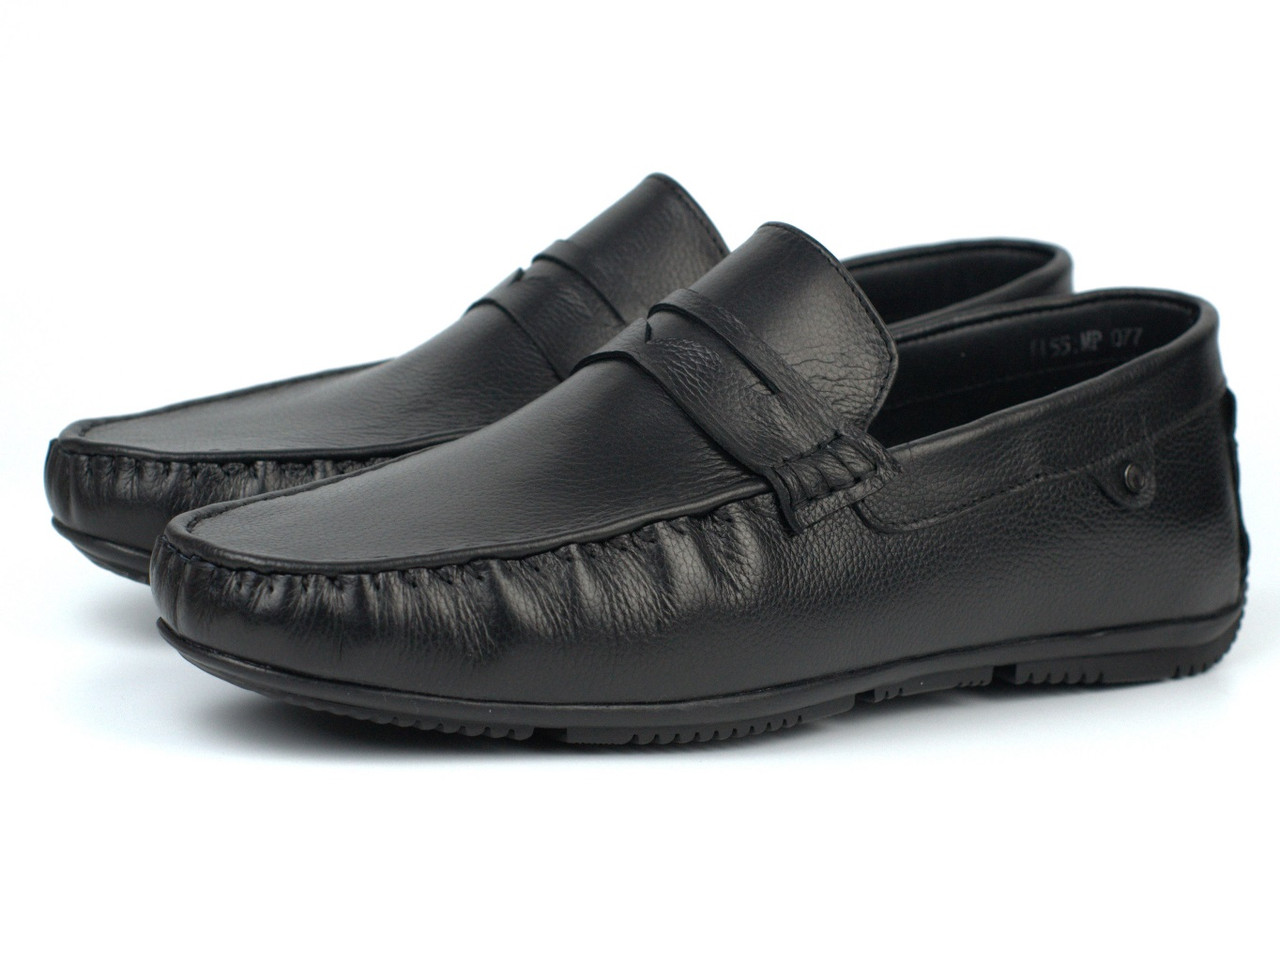 Стильні чоловічі мокасини чорні шкіряні взуття великих розмірів ETHEREAL BS Flotar Black by Rosso Avangard